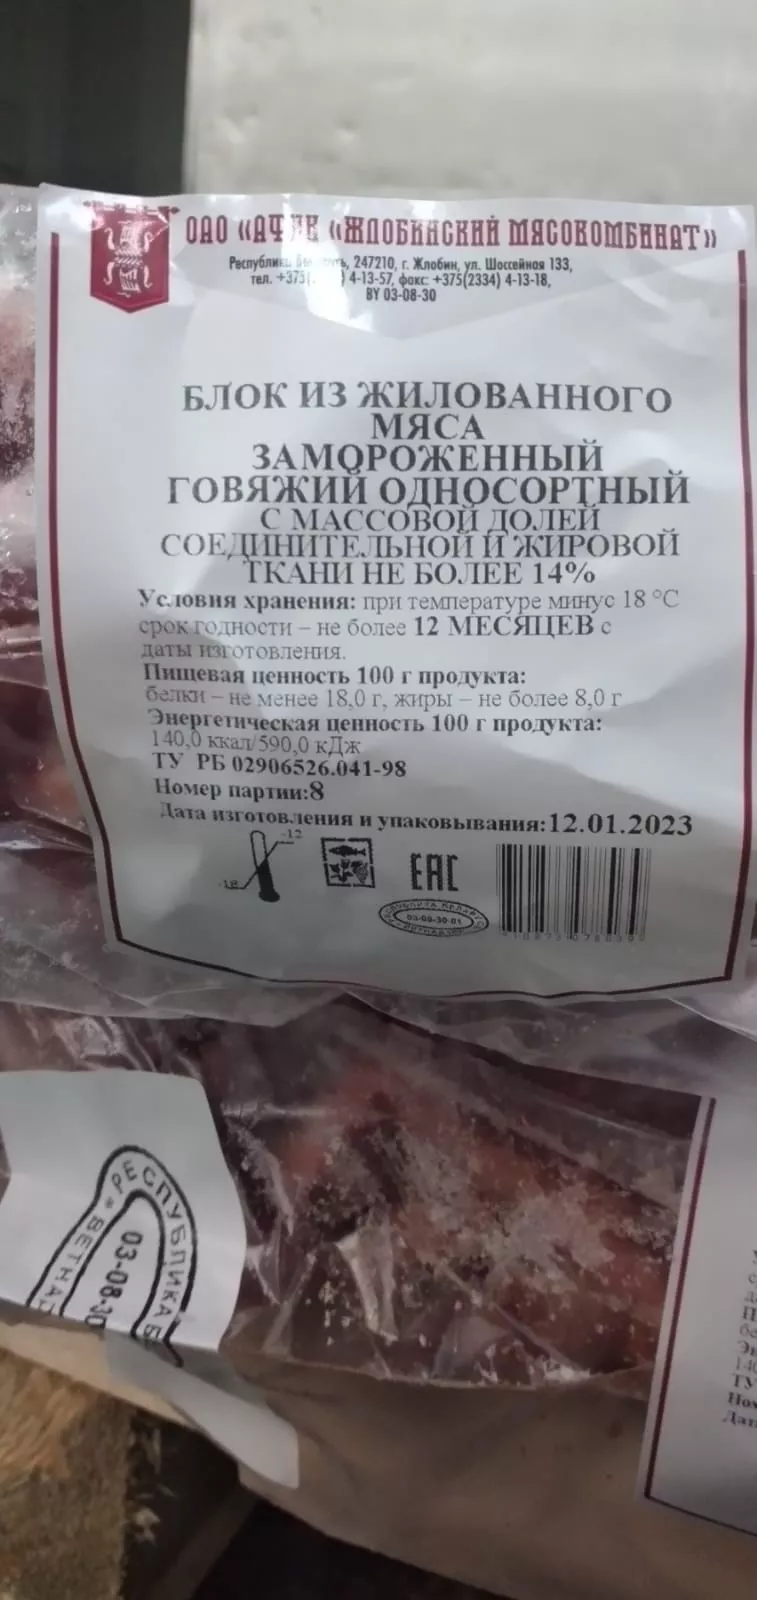 говядина блочная замороженная, односорт в Республике Беларусь 2